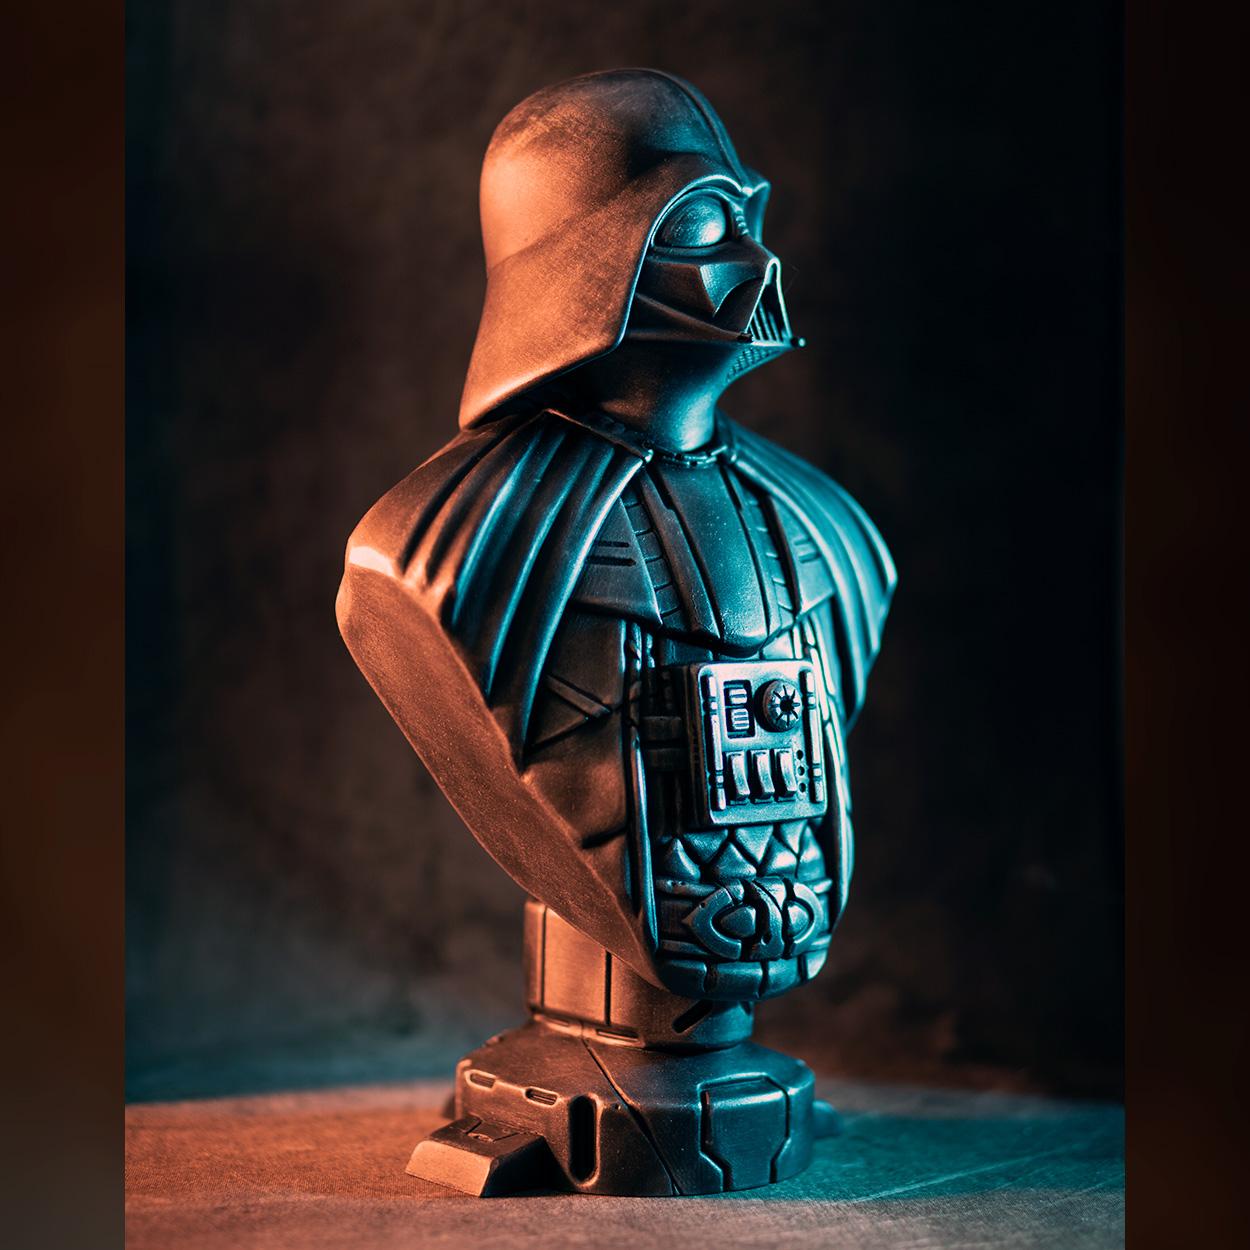 Darth Vader bust (fan art) 3d model